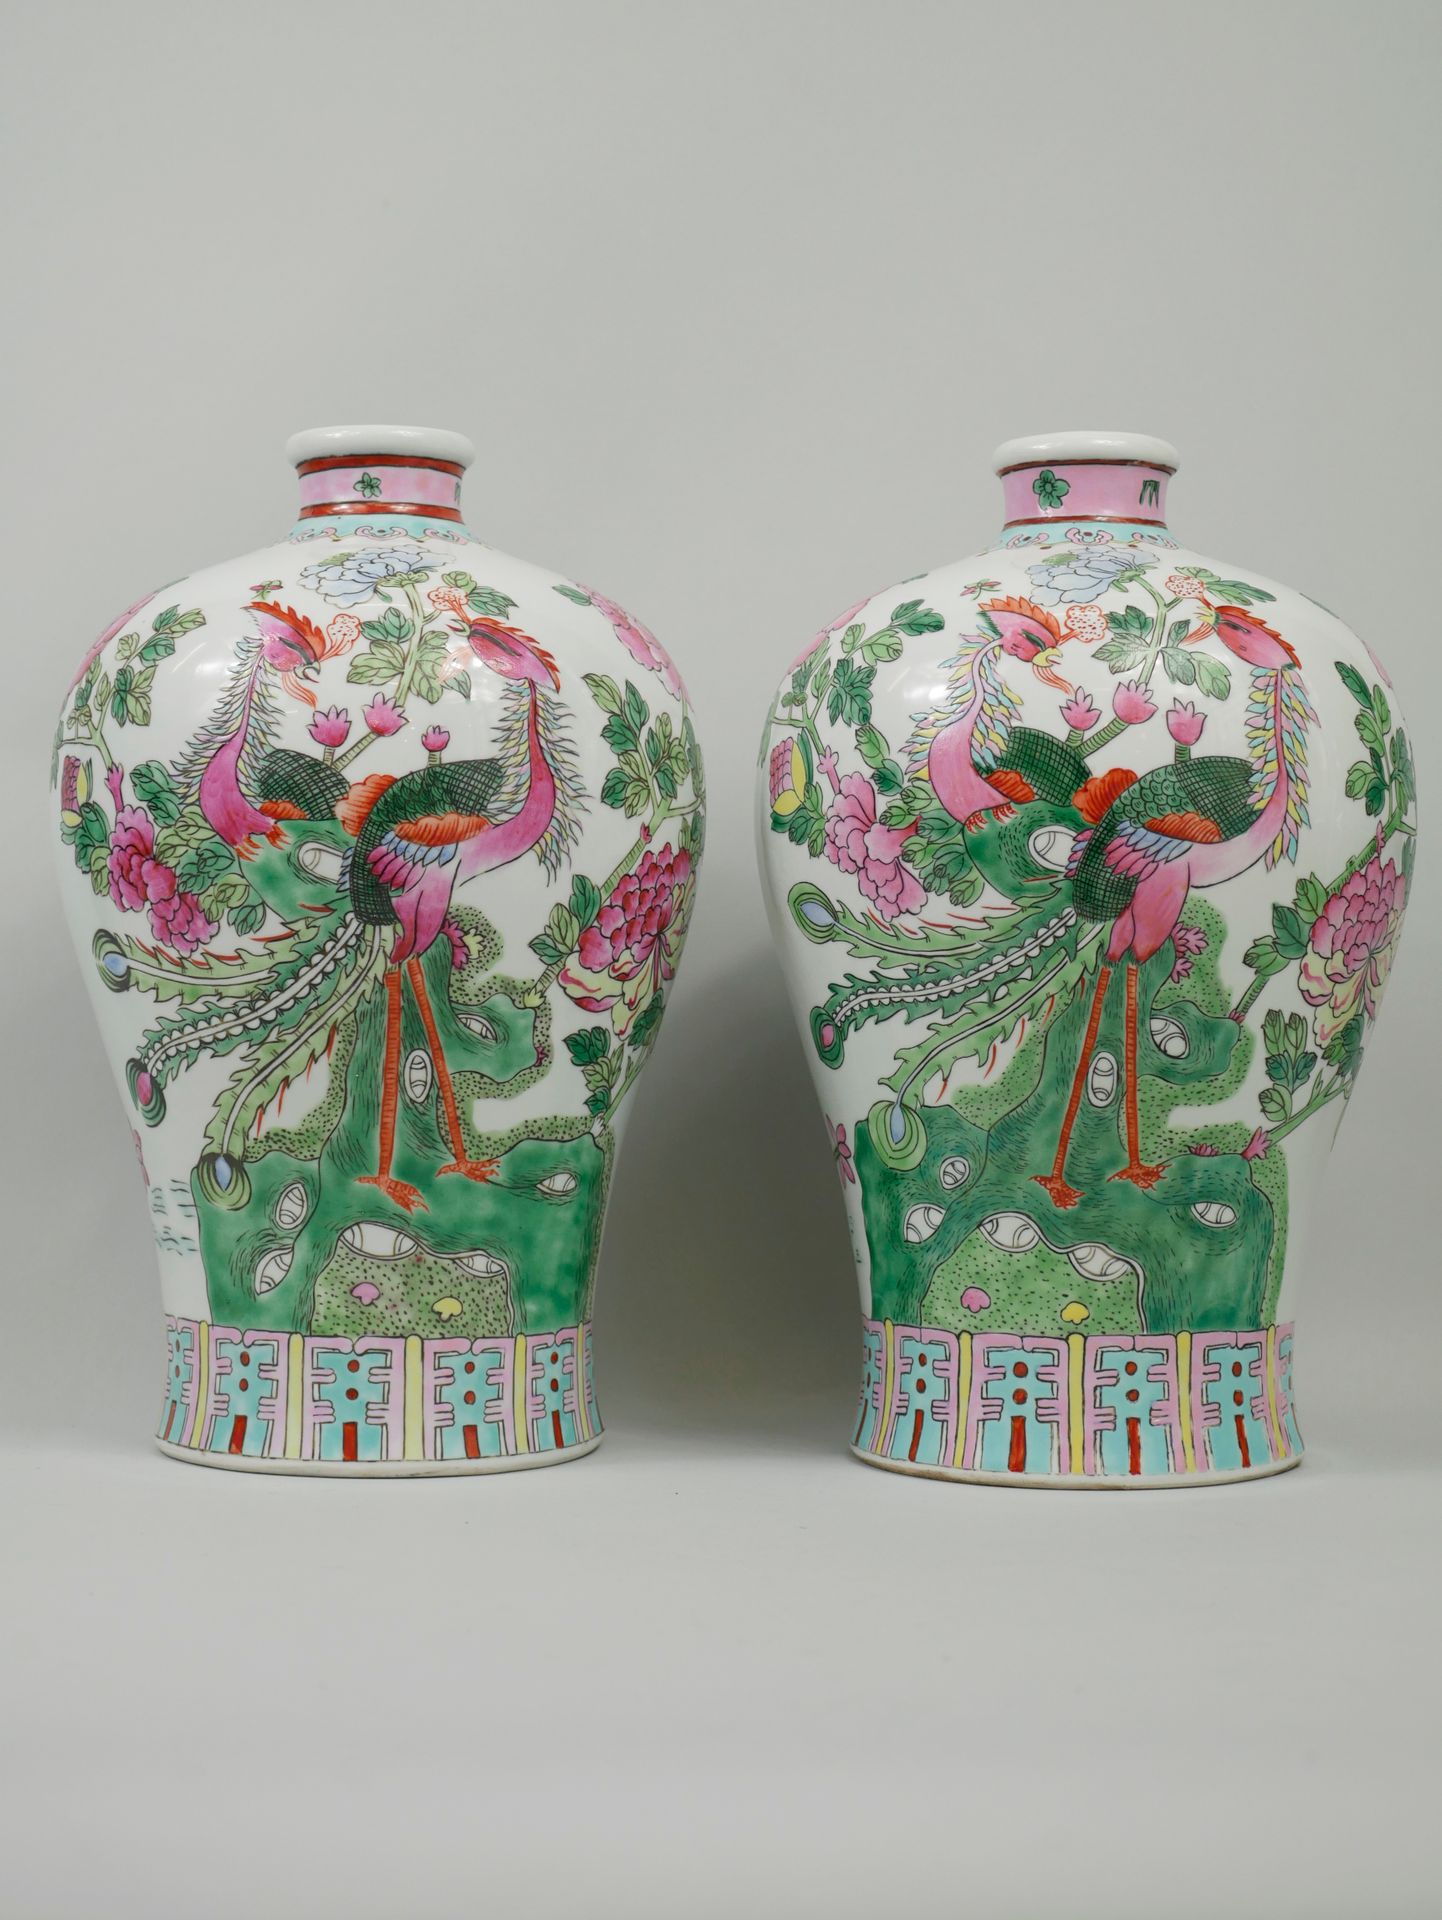 Null 中国，20世纪。两个花瓶，装饰着鸟和花。背面有 "同治 "的伪作标记。多色珐琅彩瓷器。高30厘米，直径20厘米。